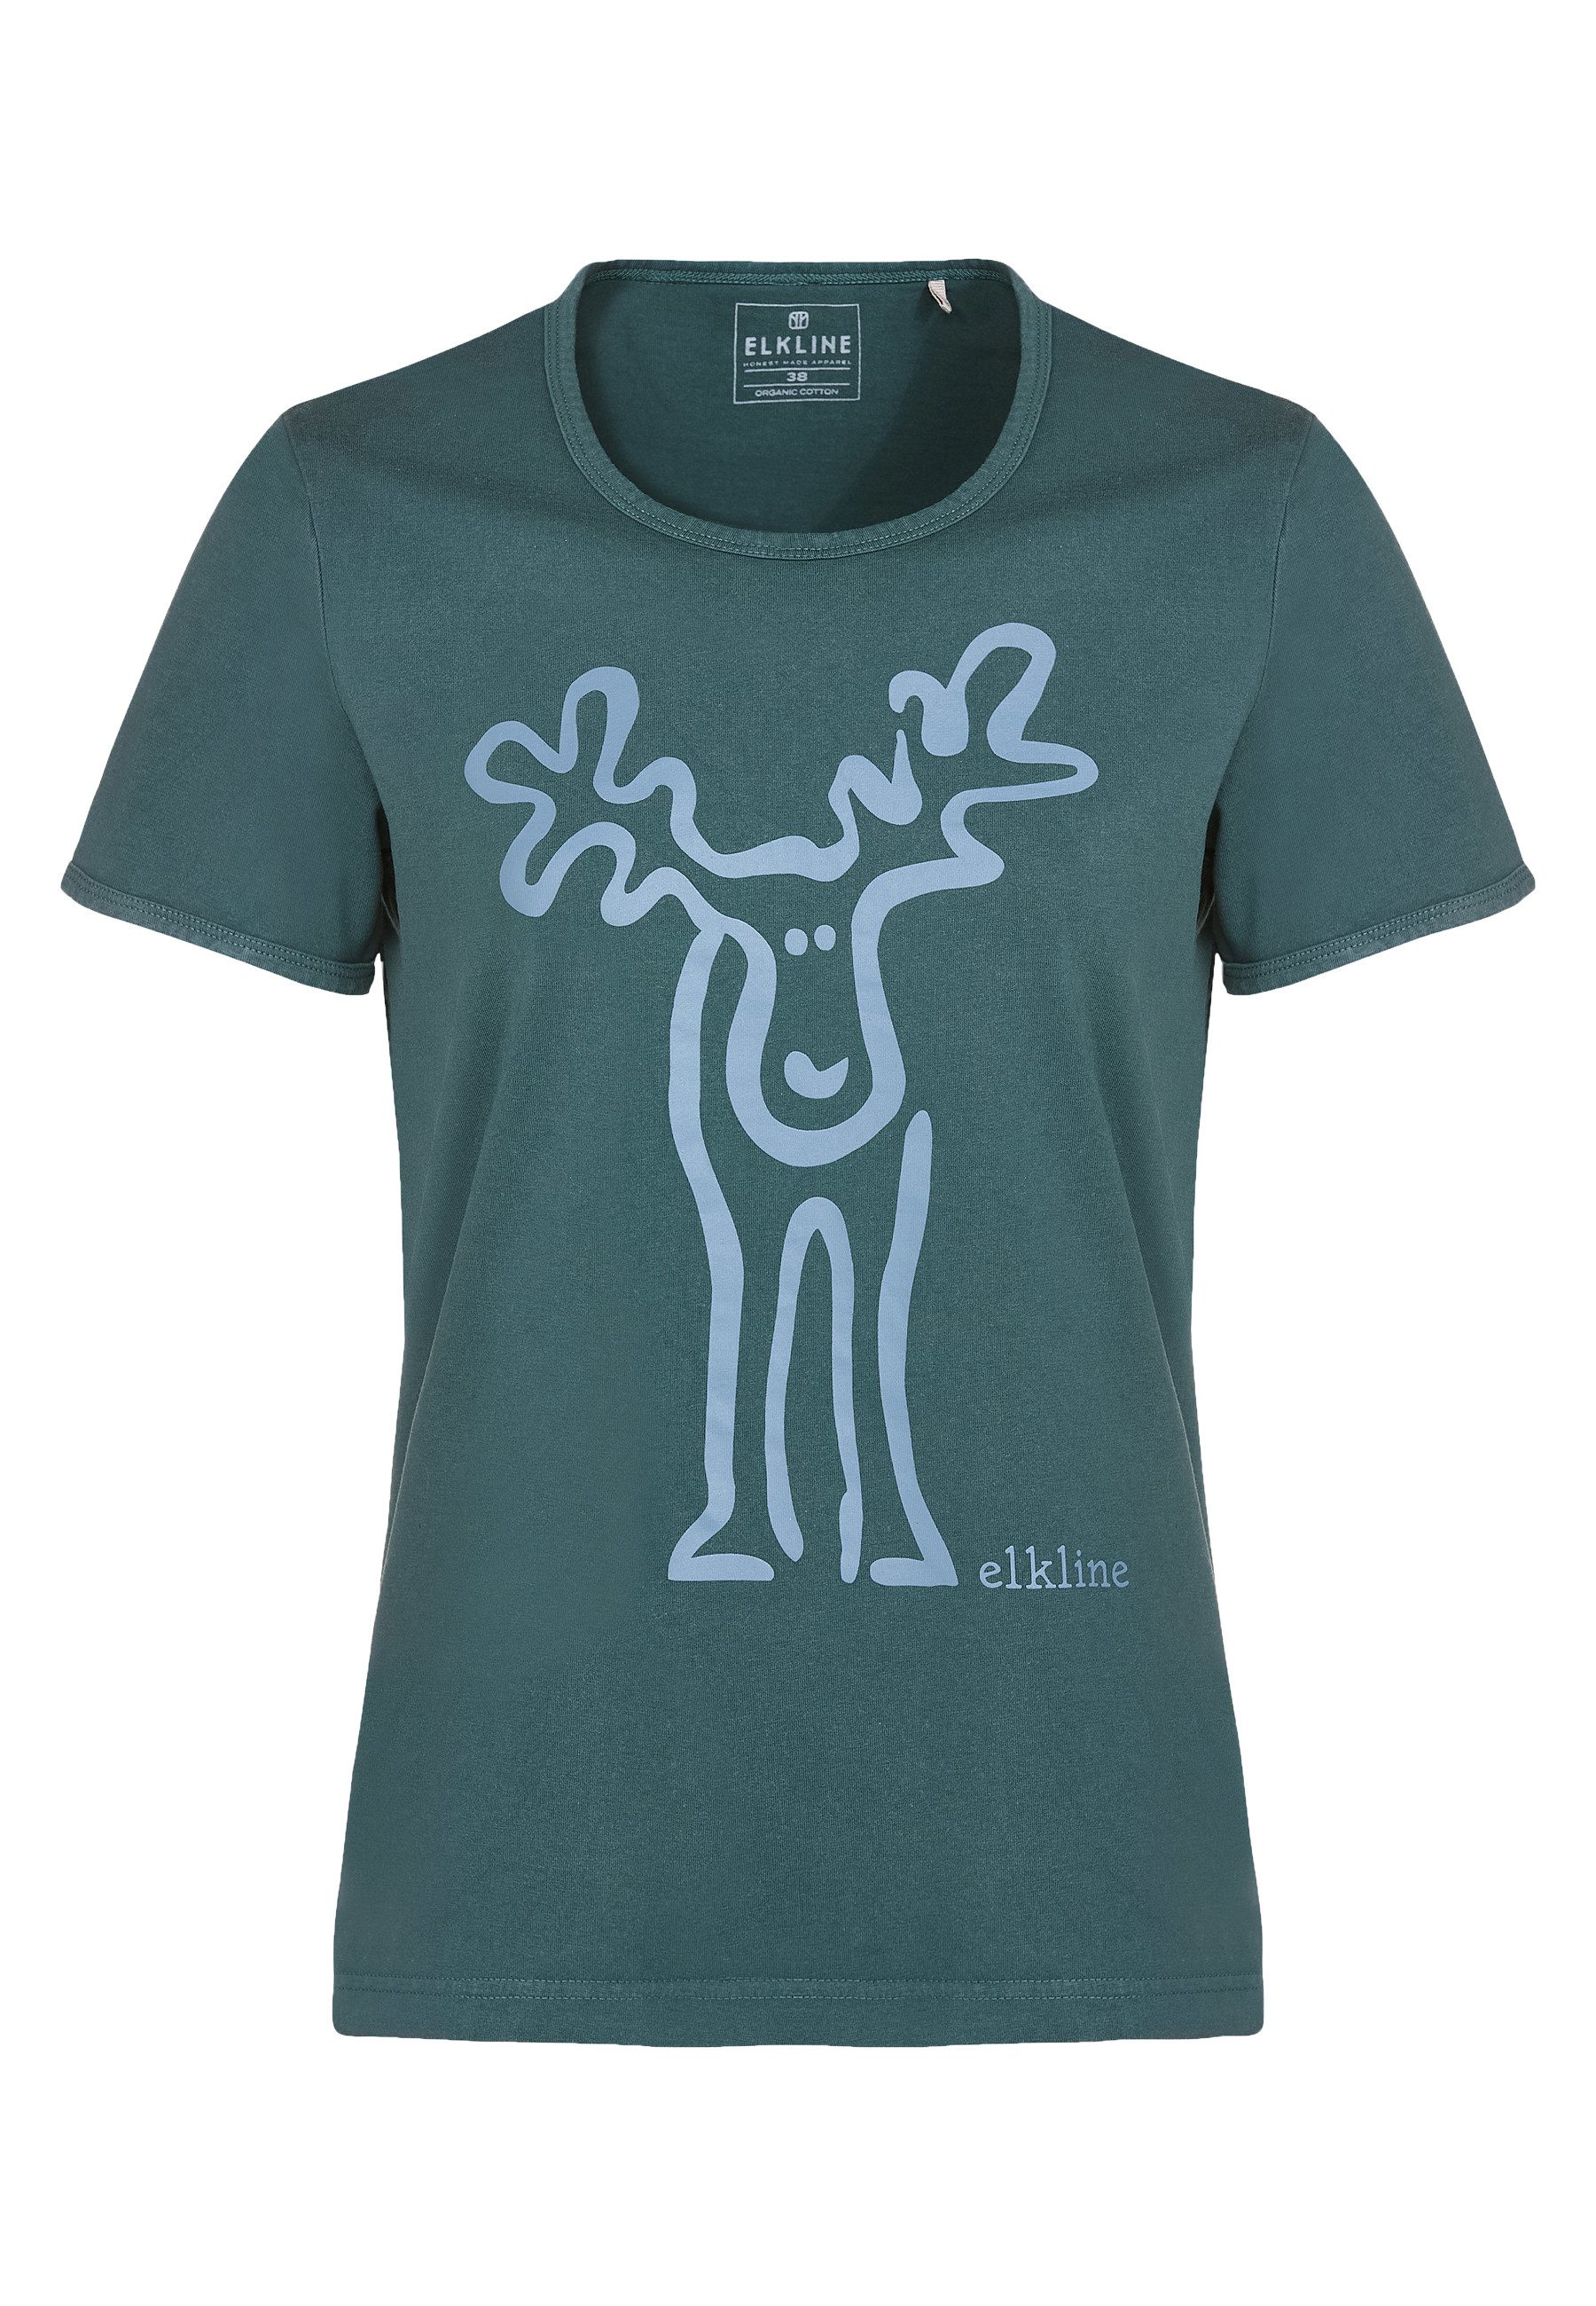 Elkline T-Shirt Rudolfine Retro Kult Elch Brust und Rücken Print